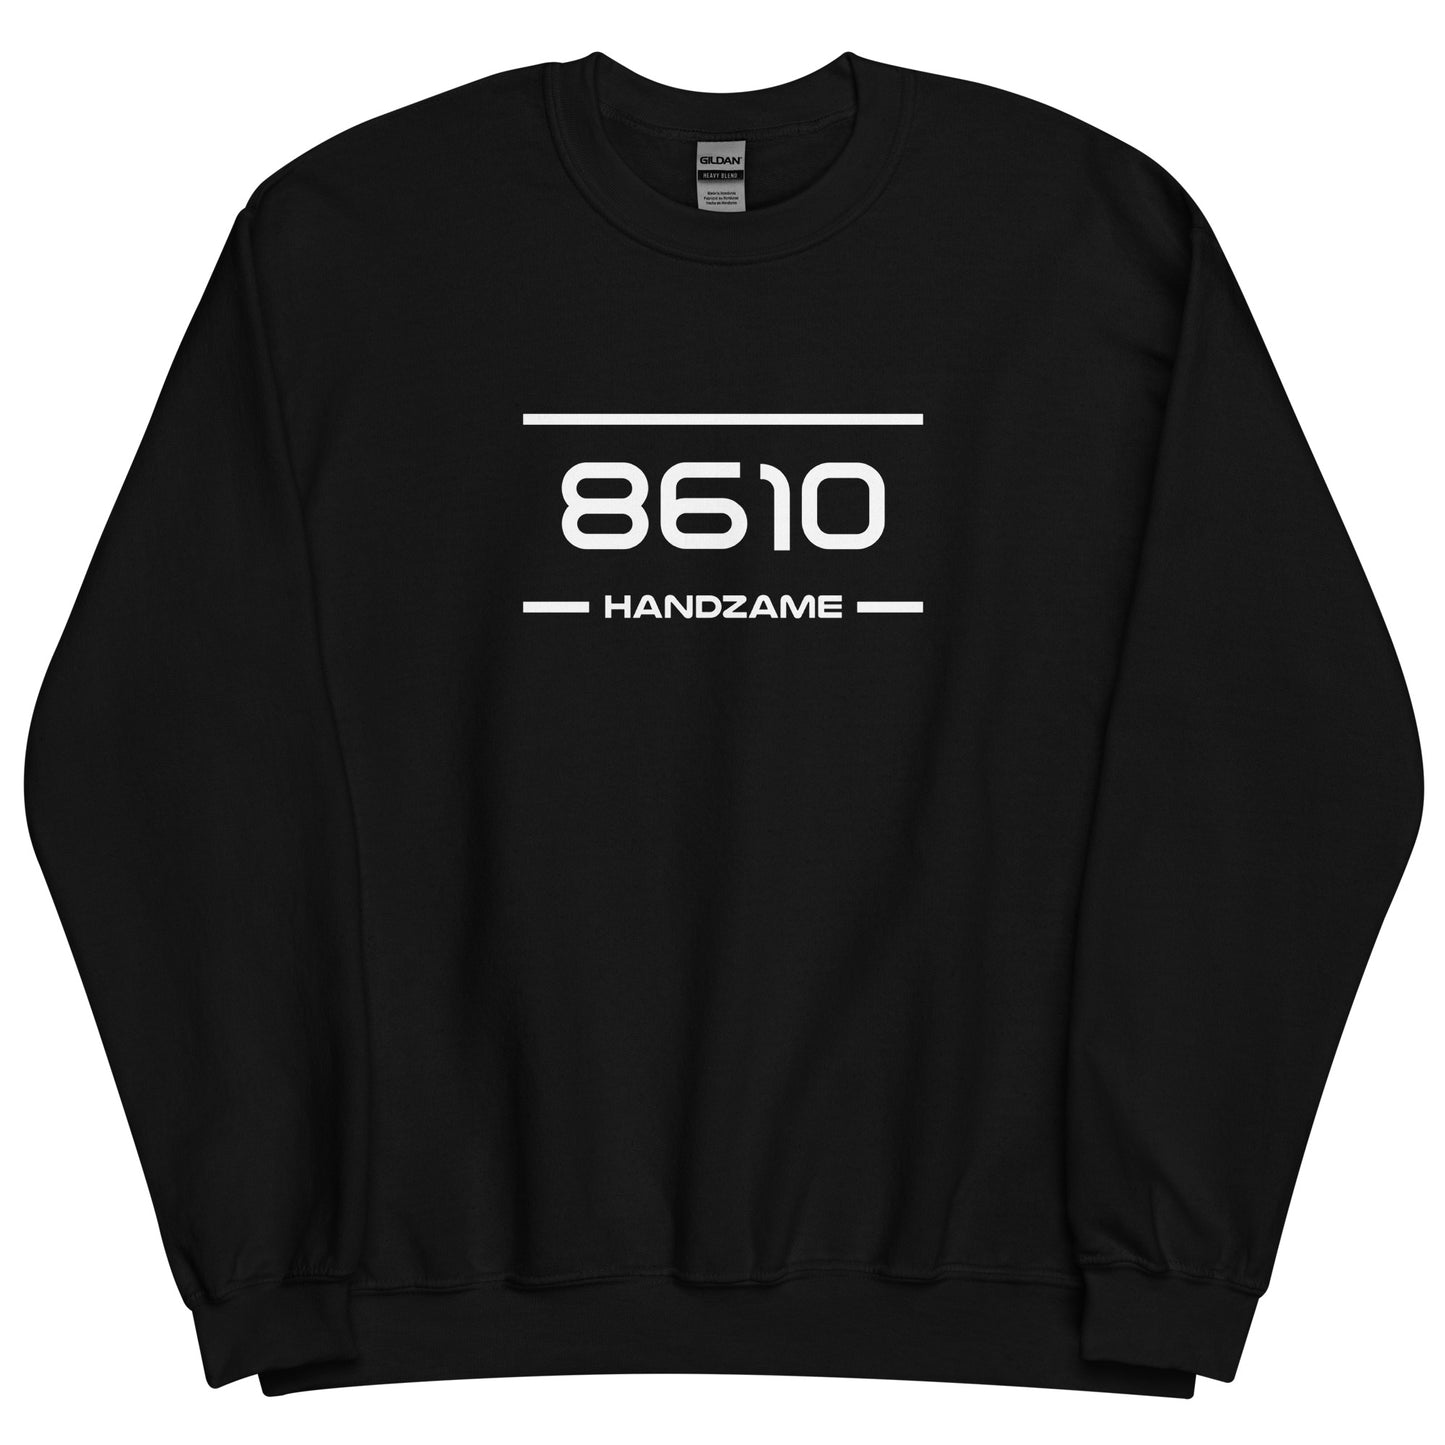 Sweater - 8610 - Handzame (M/V)